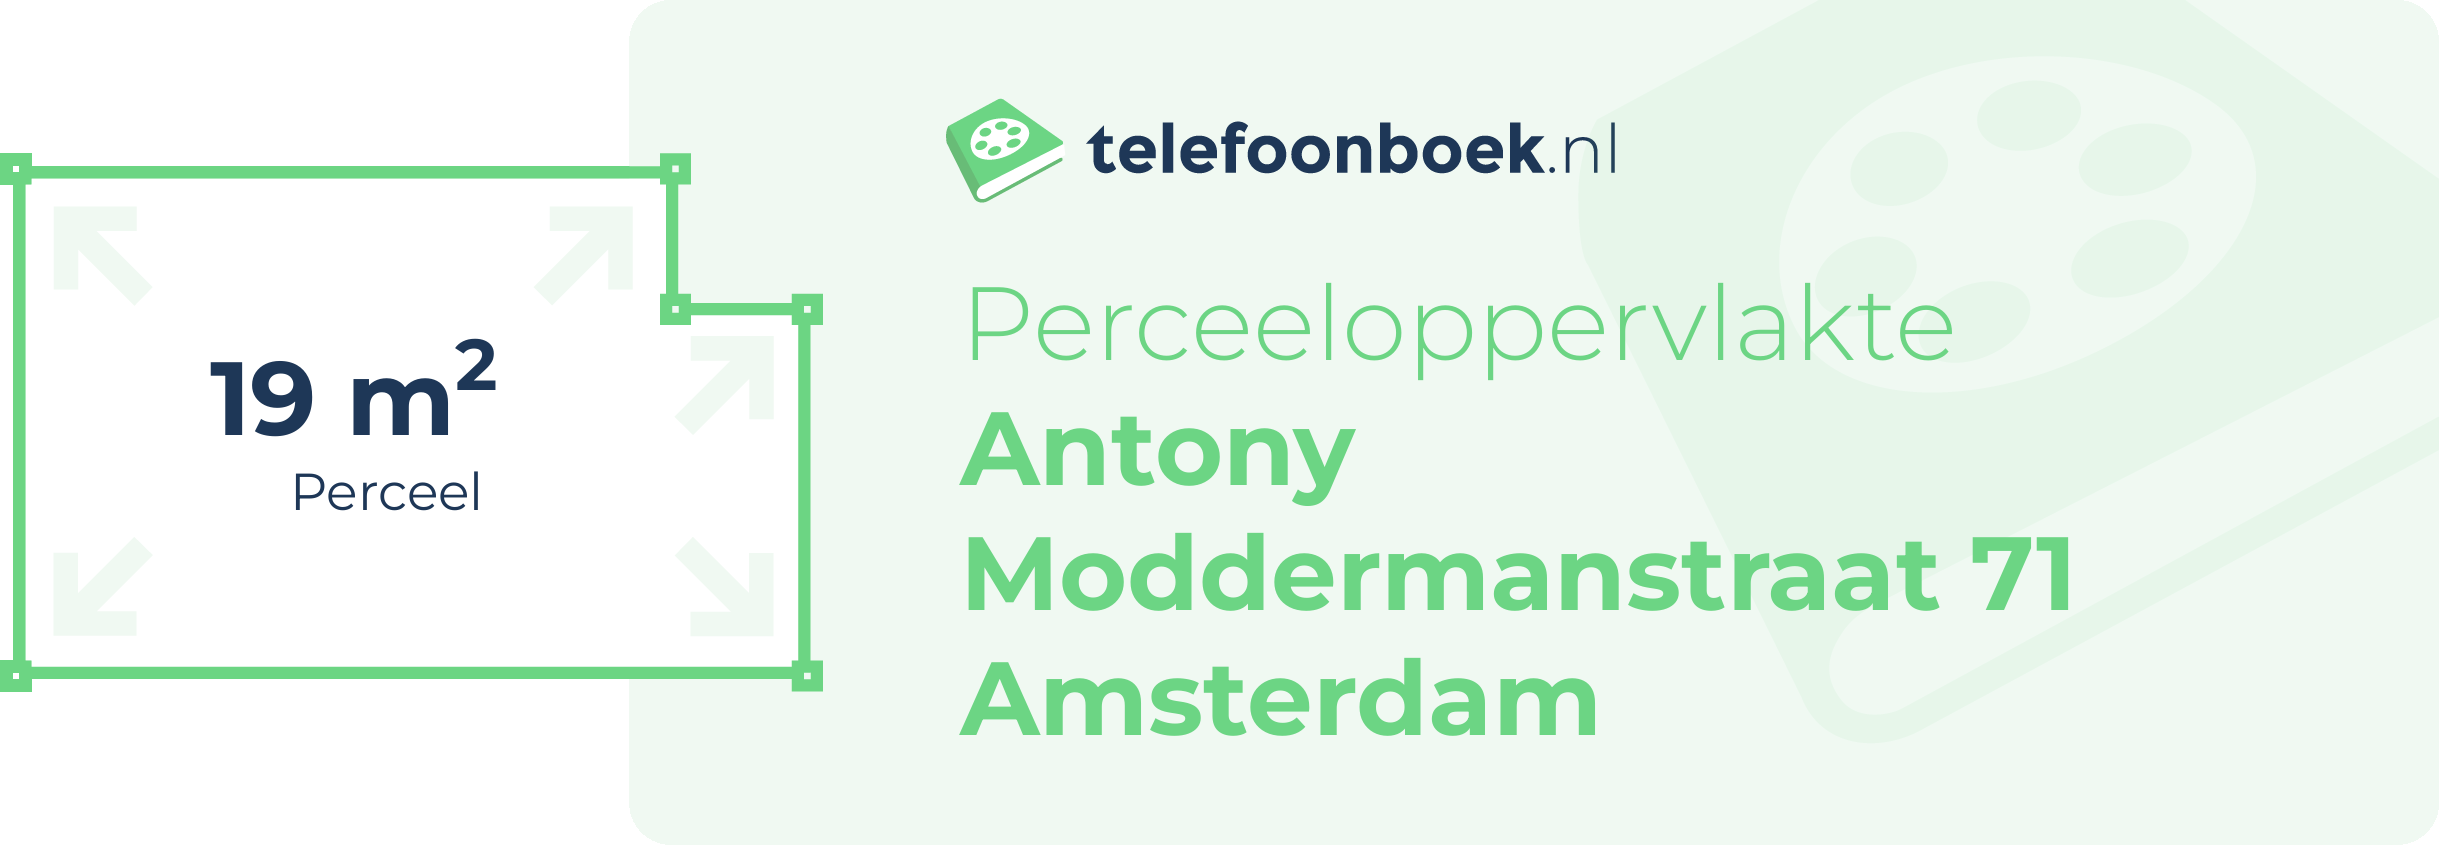 Perceeloppervlakte Antony Moddermanstraat 71 Amsterdam